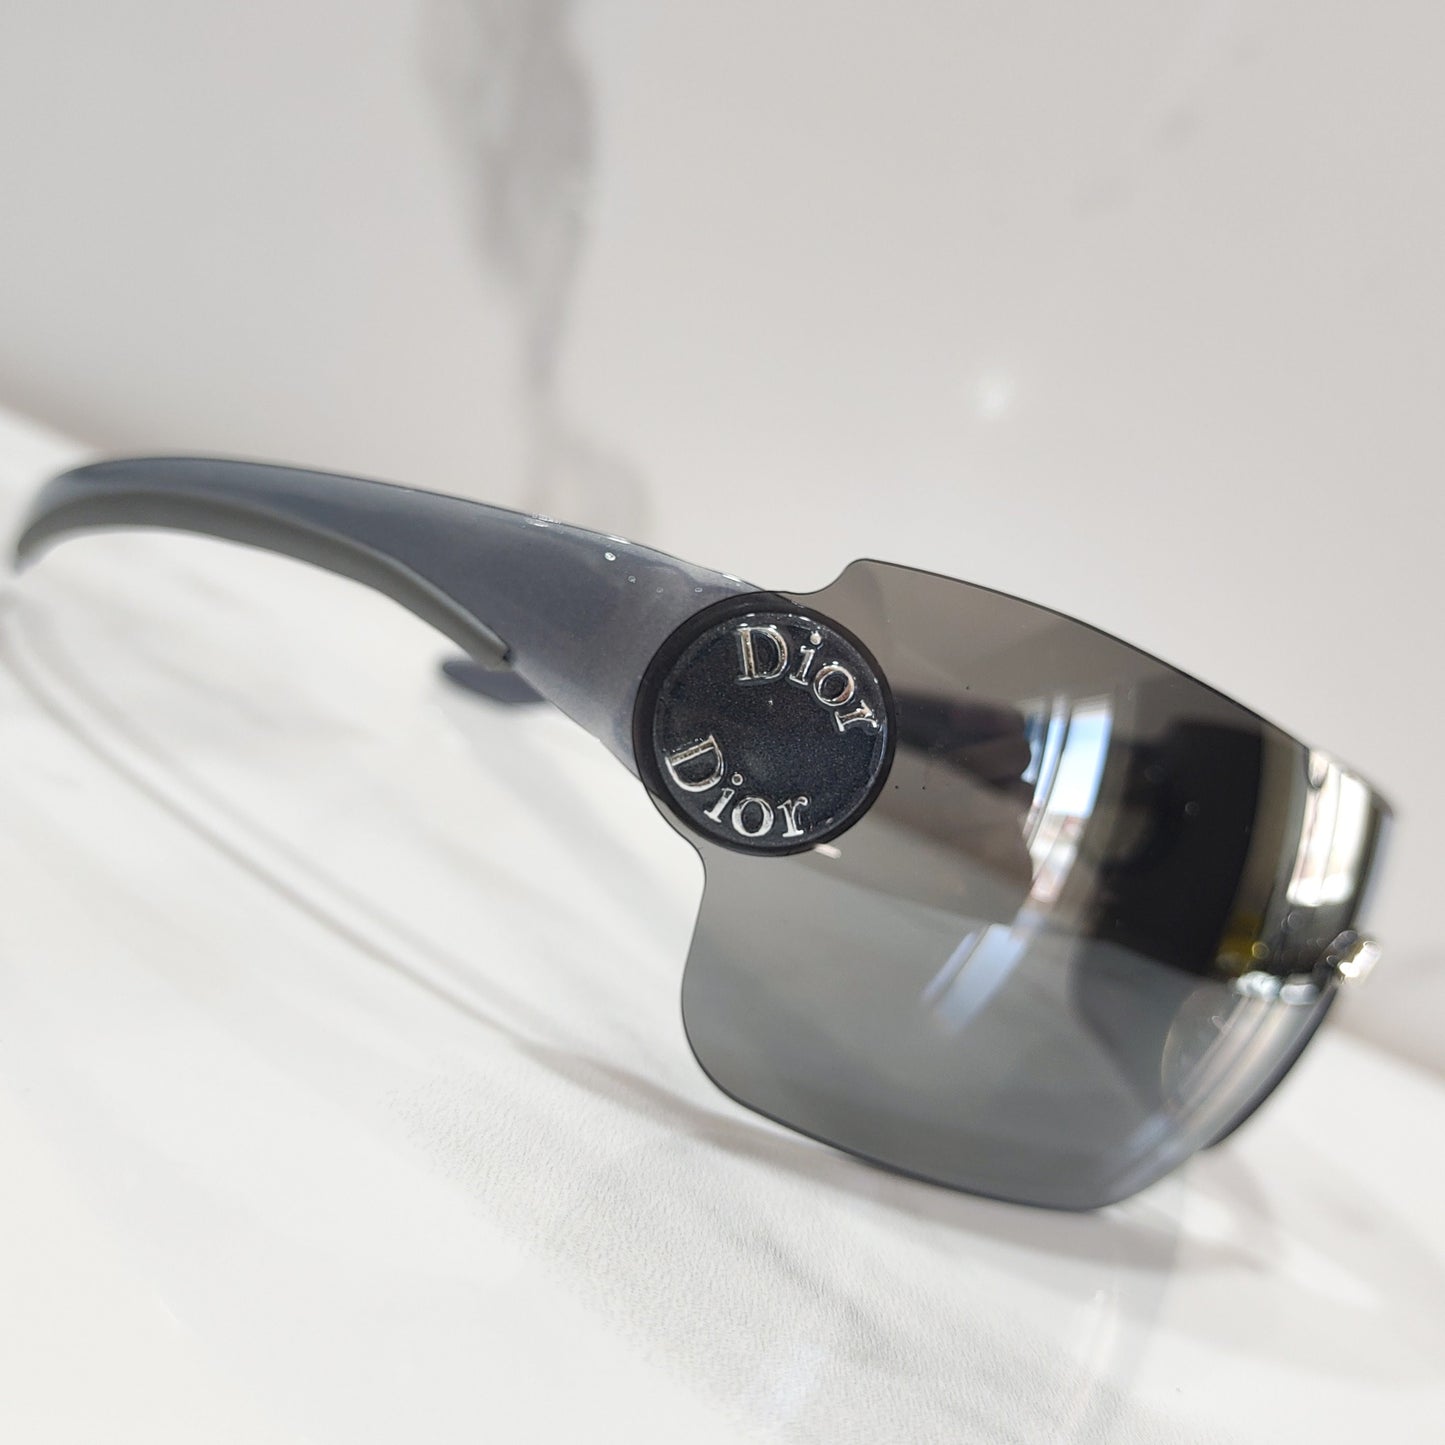 Vintage Christian Dior SCHLAK 2 盾形太阳镜眼镜 gafas Y2k NOS 从未戴过